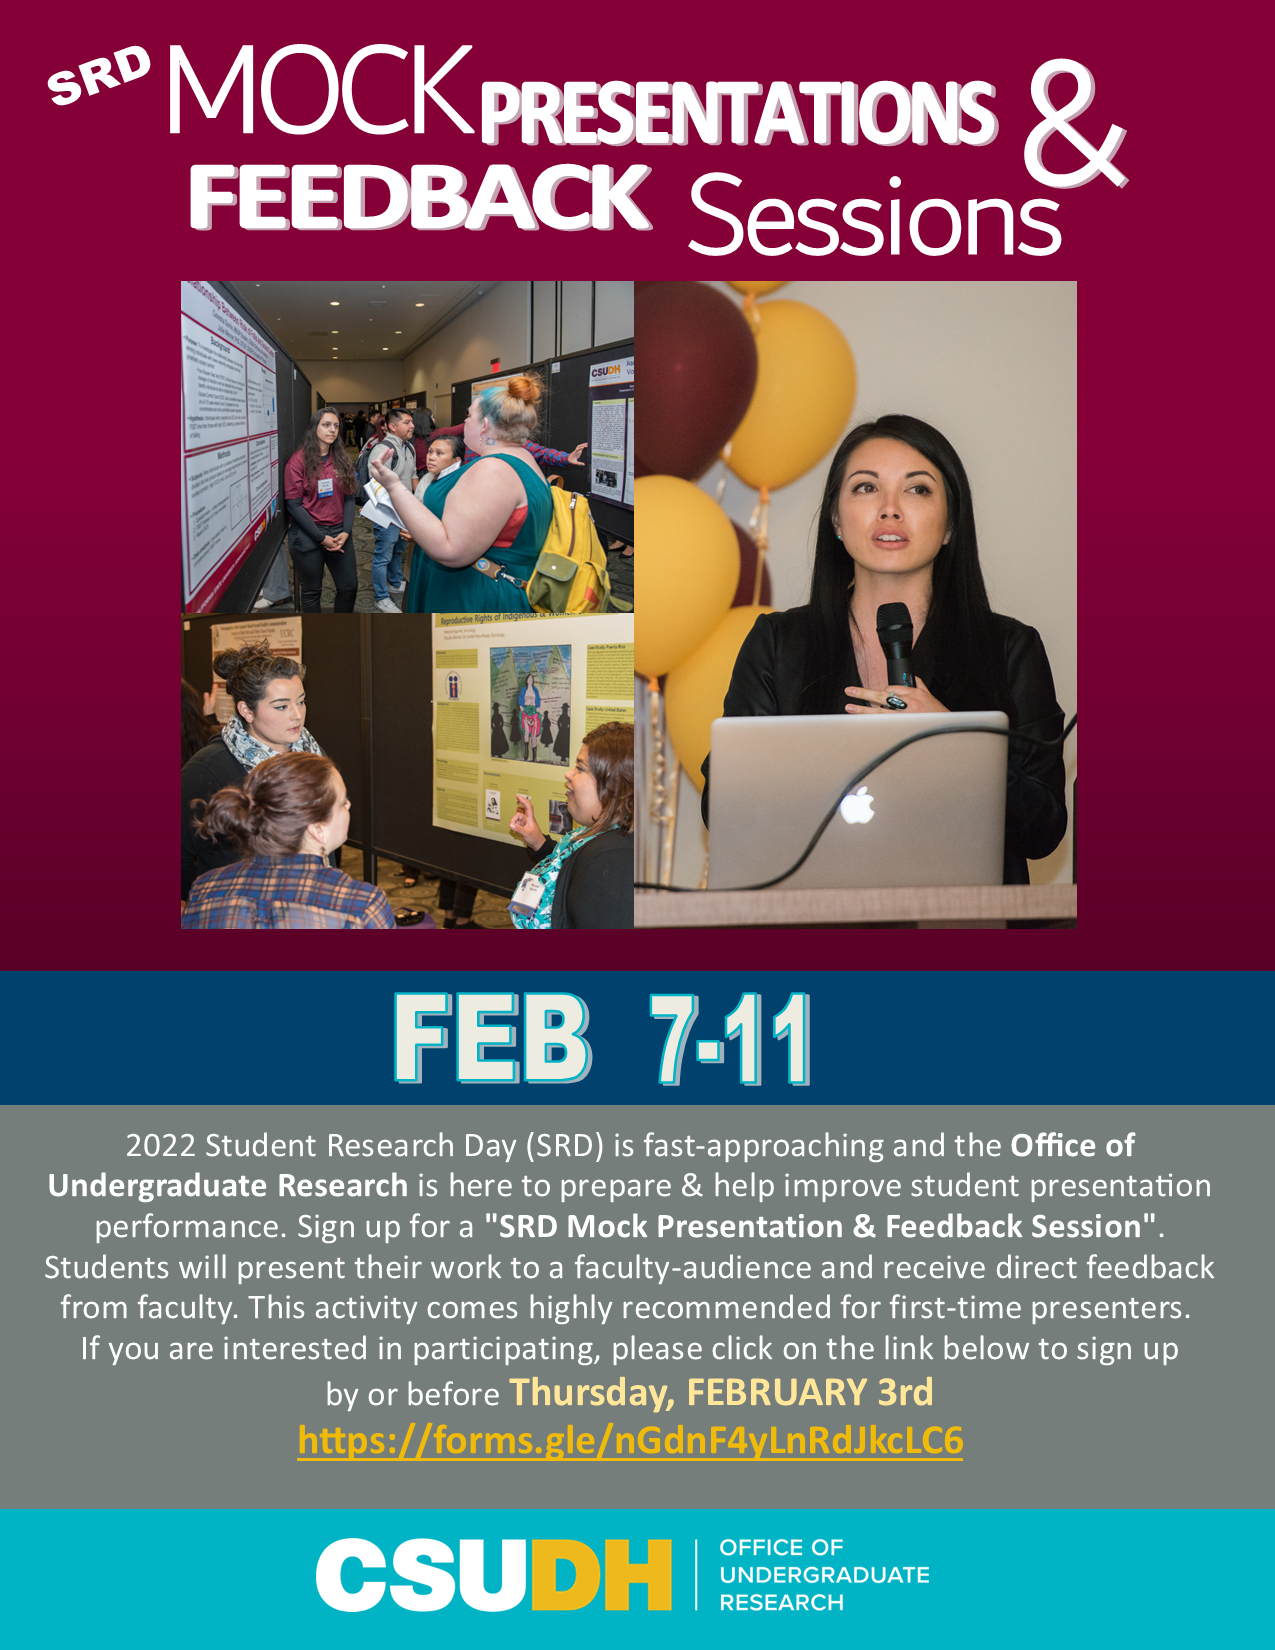 SRD Mock Presentations & Feedback Sessions Flyer- Feb 7-11 2022